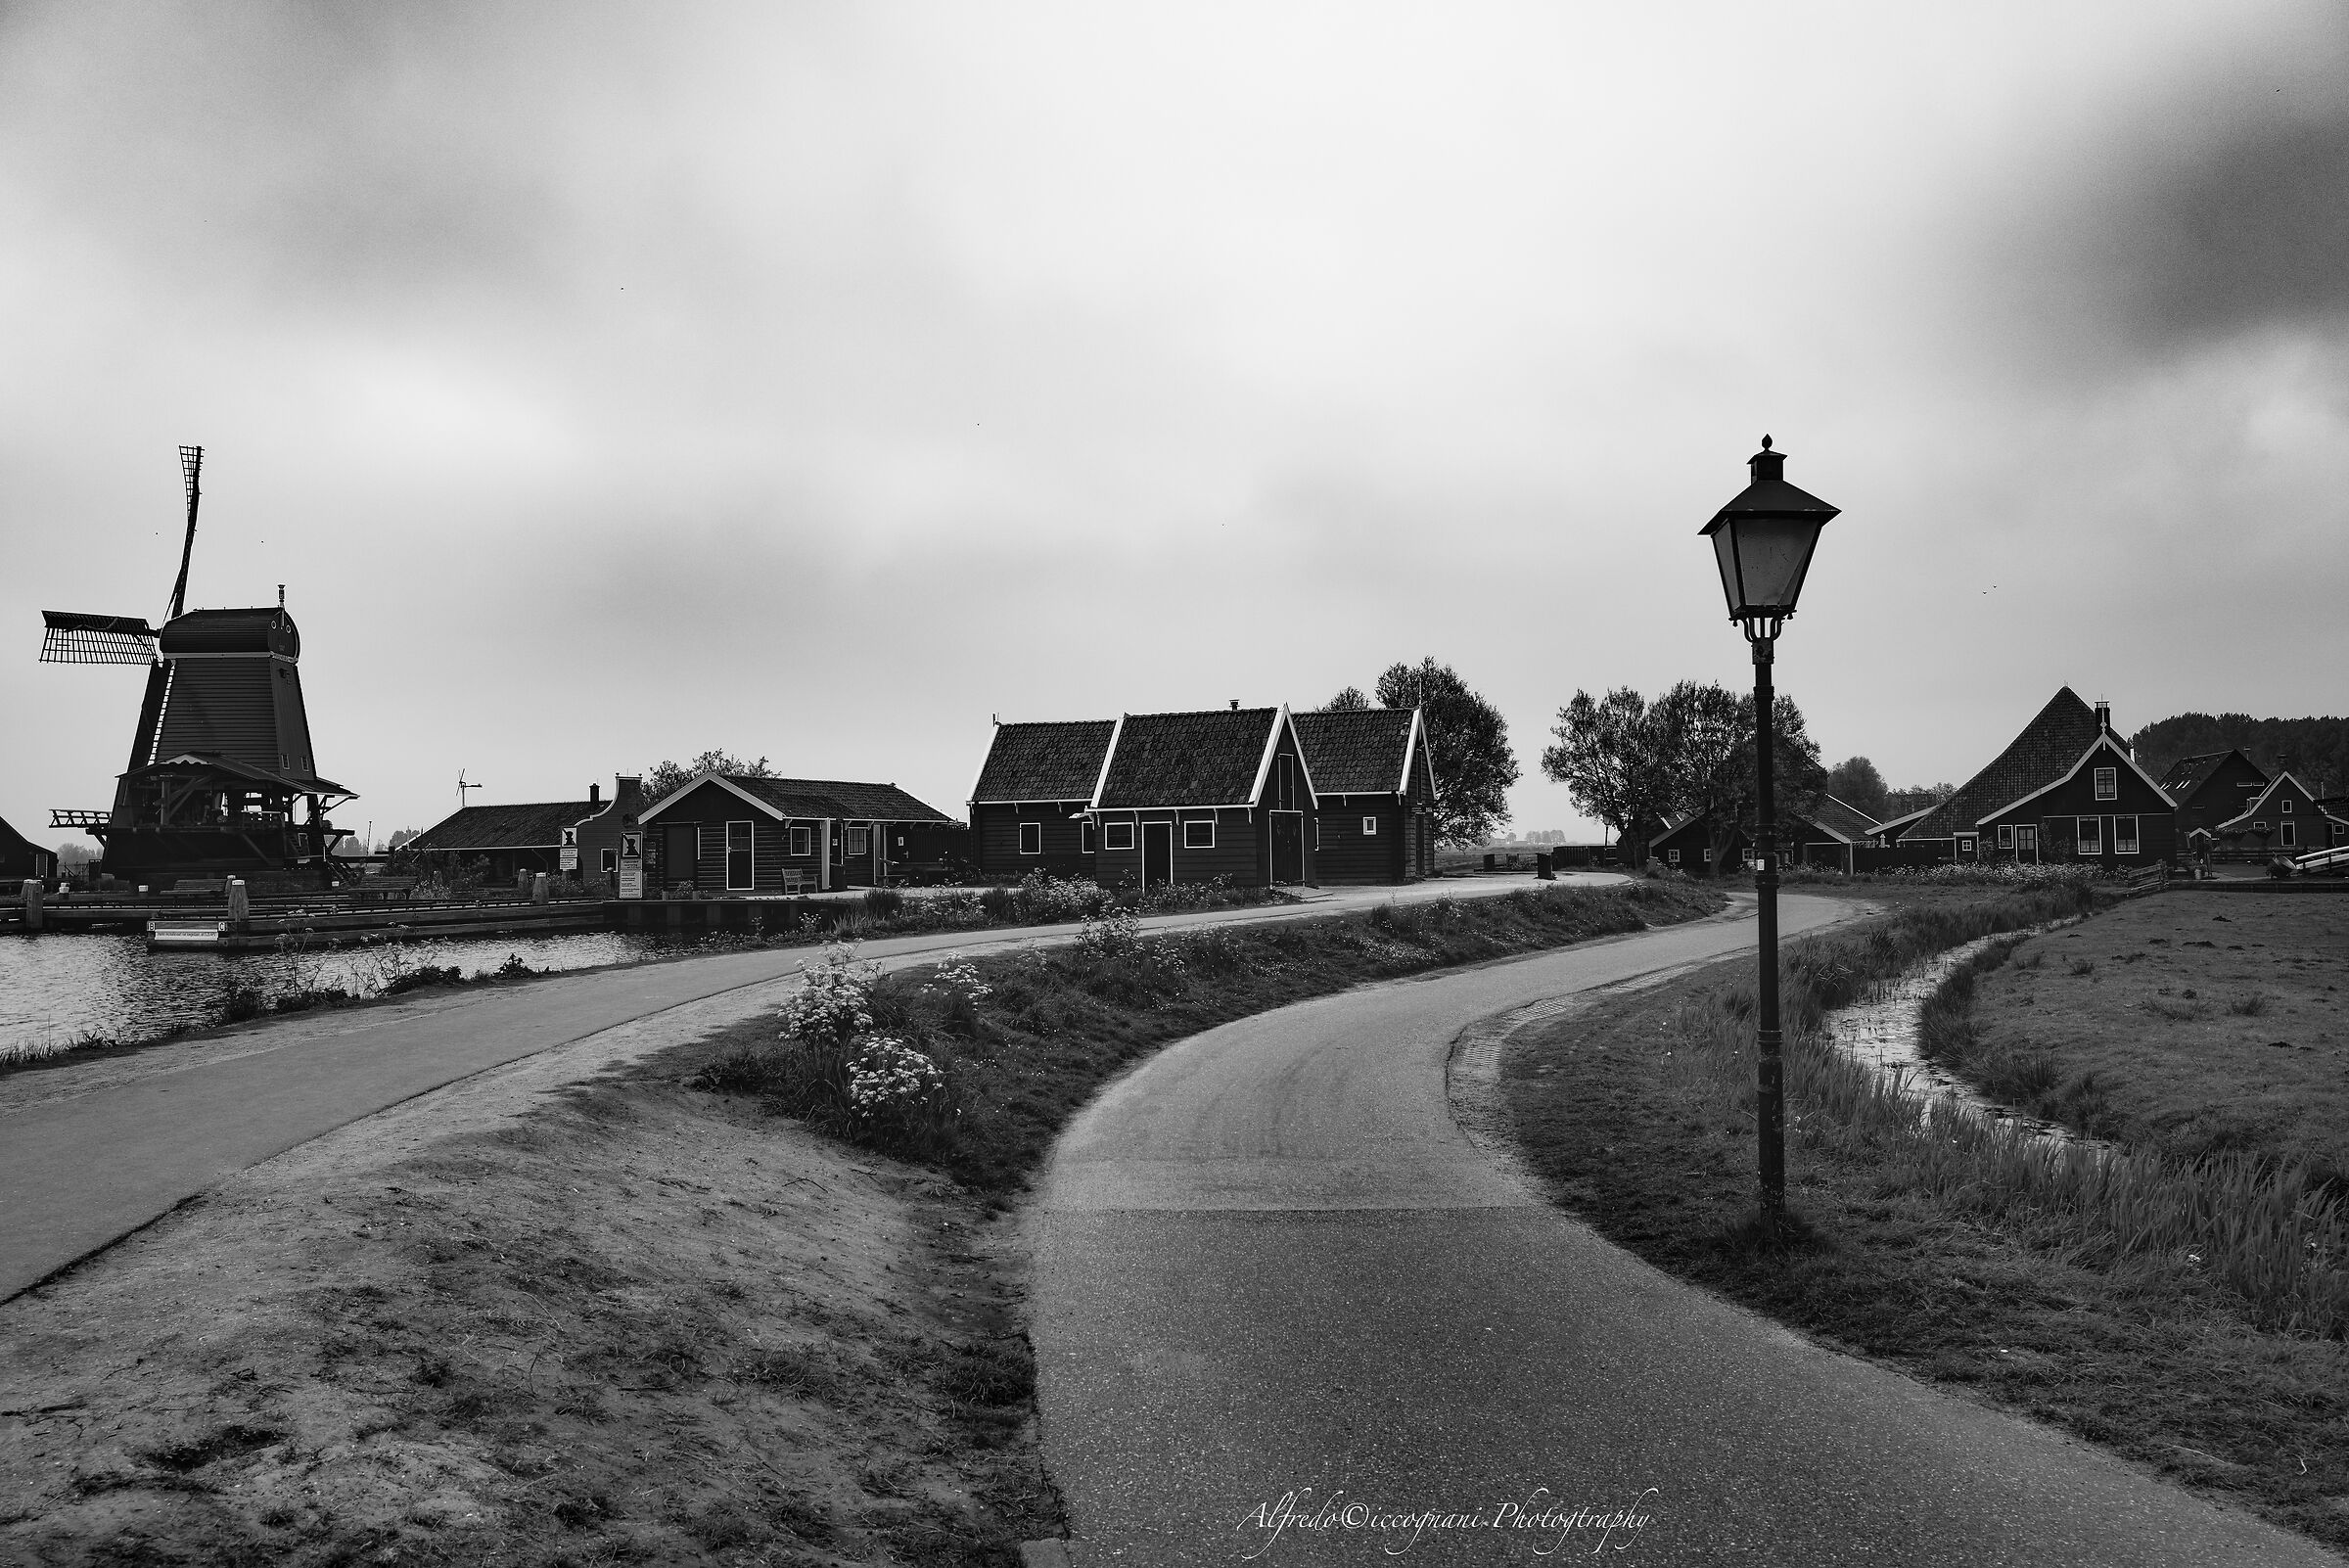 Il villaggio di Zaanse Schans...